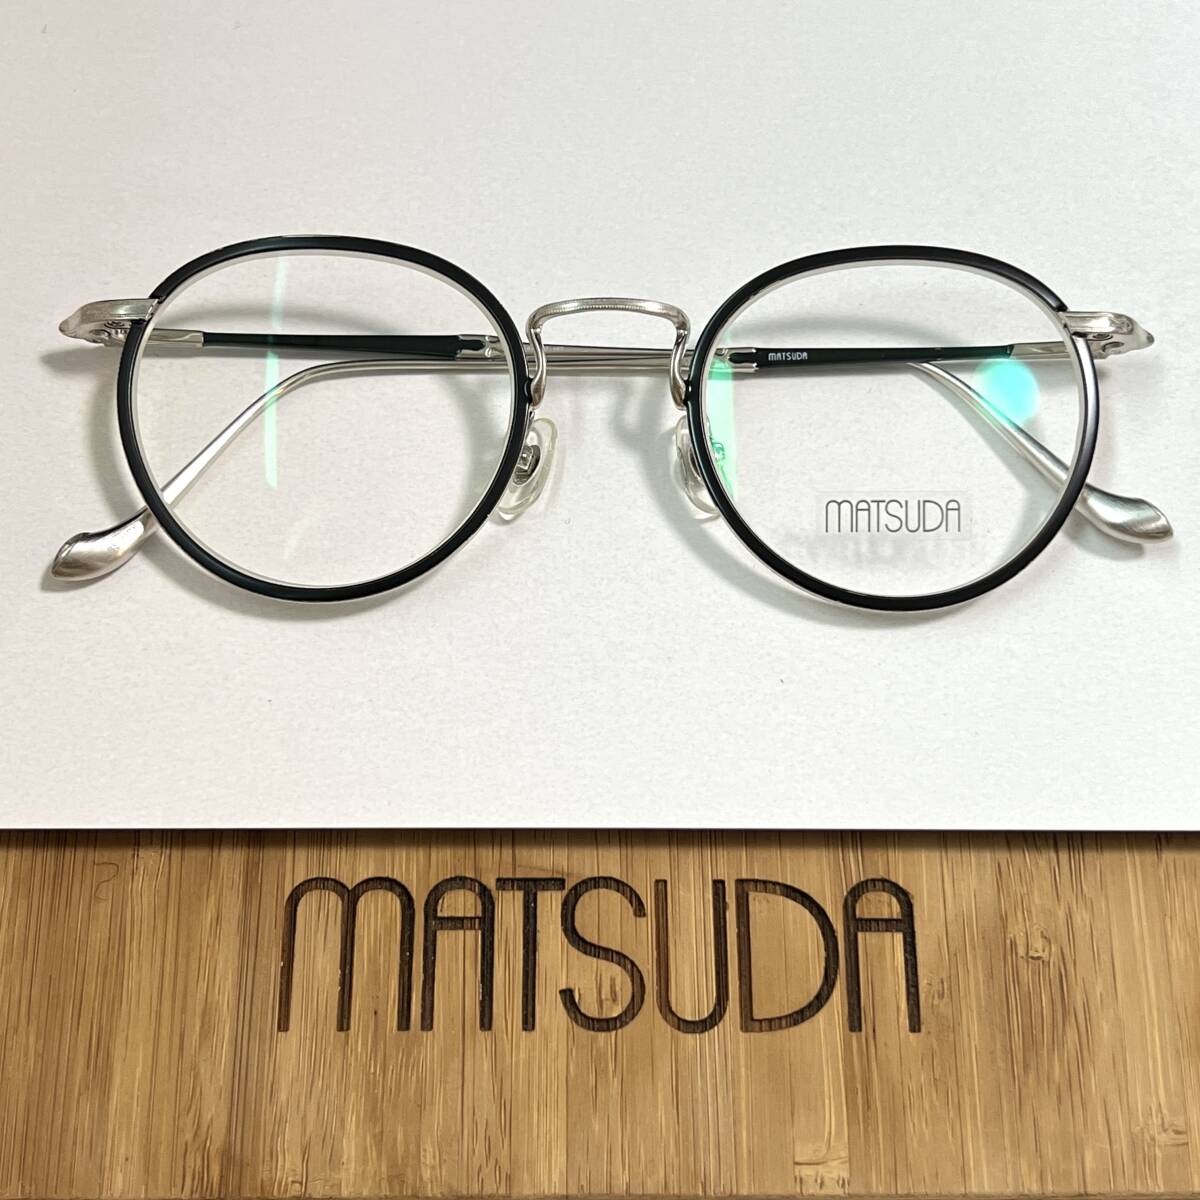 ◆MATSUDA EYEWEAR マツダ アイウェア 眼鏡フレーム メガネ M3058 人気品番 48□22-145 メンズ レディース ラウンド シルバー_画像1